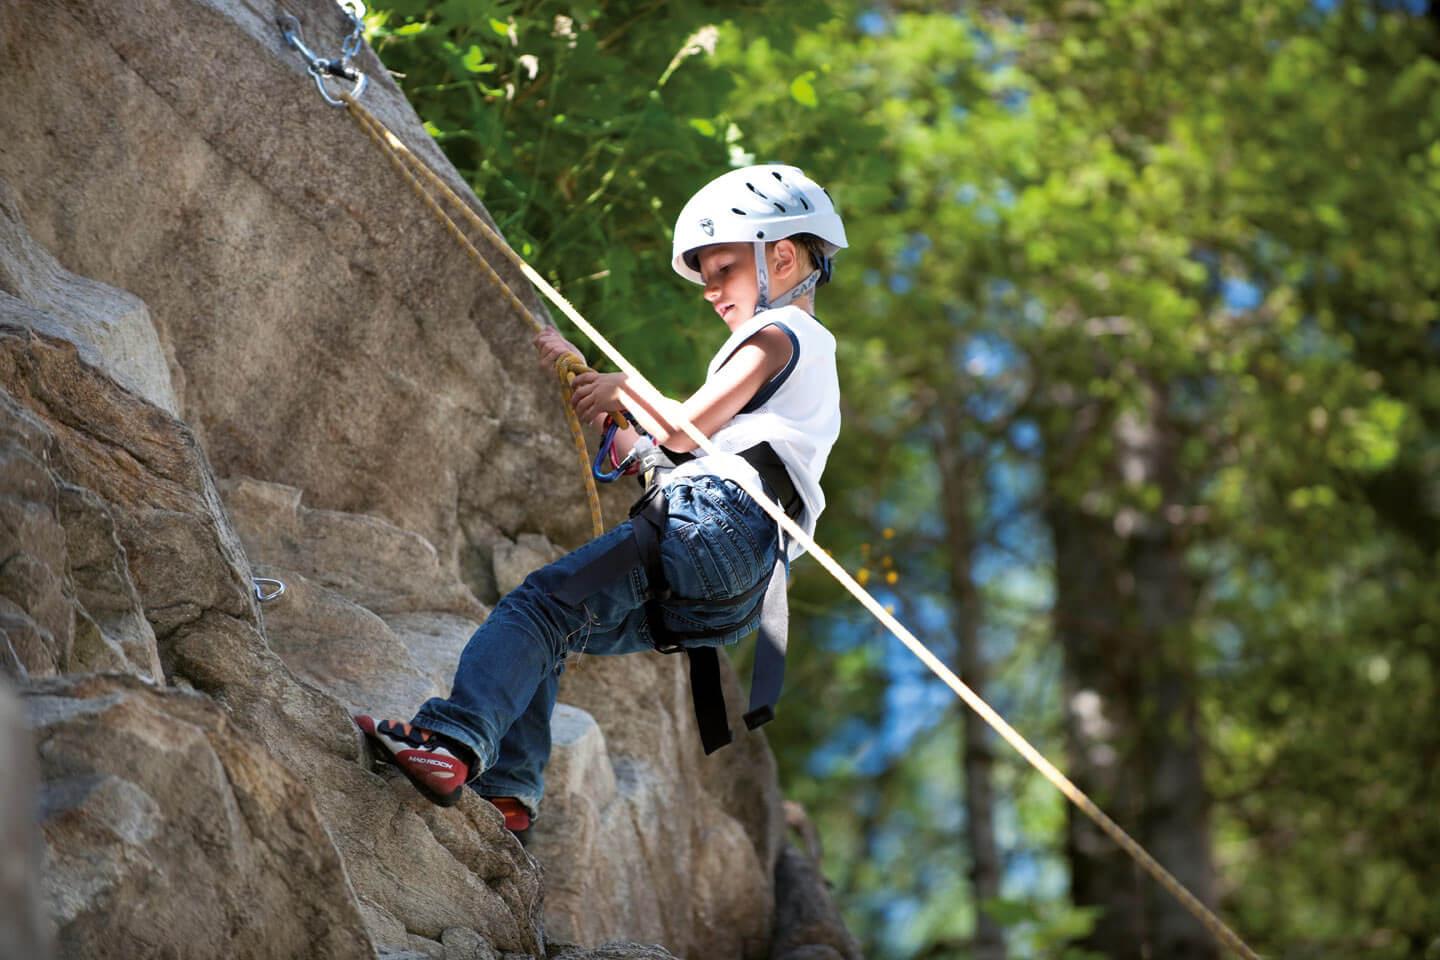 Kinder Klettern in Bad Gastein